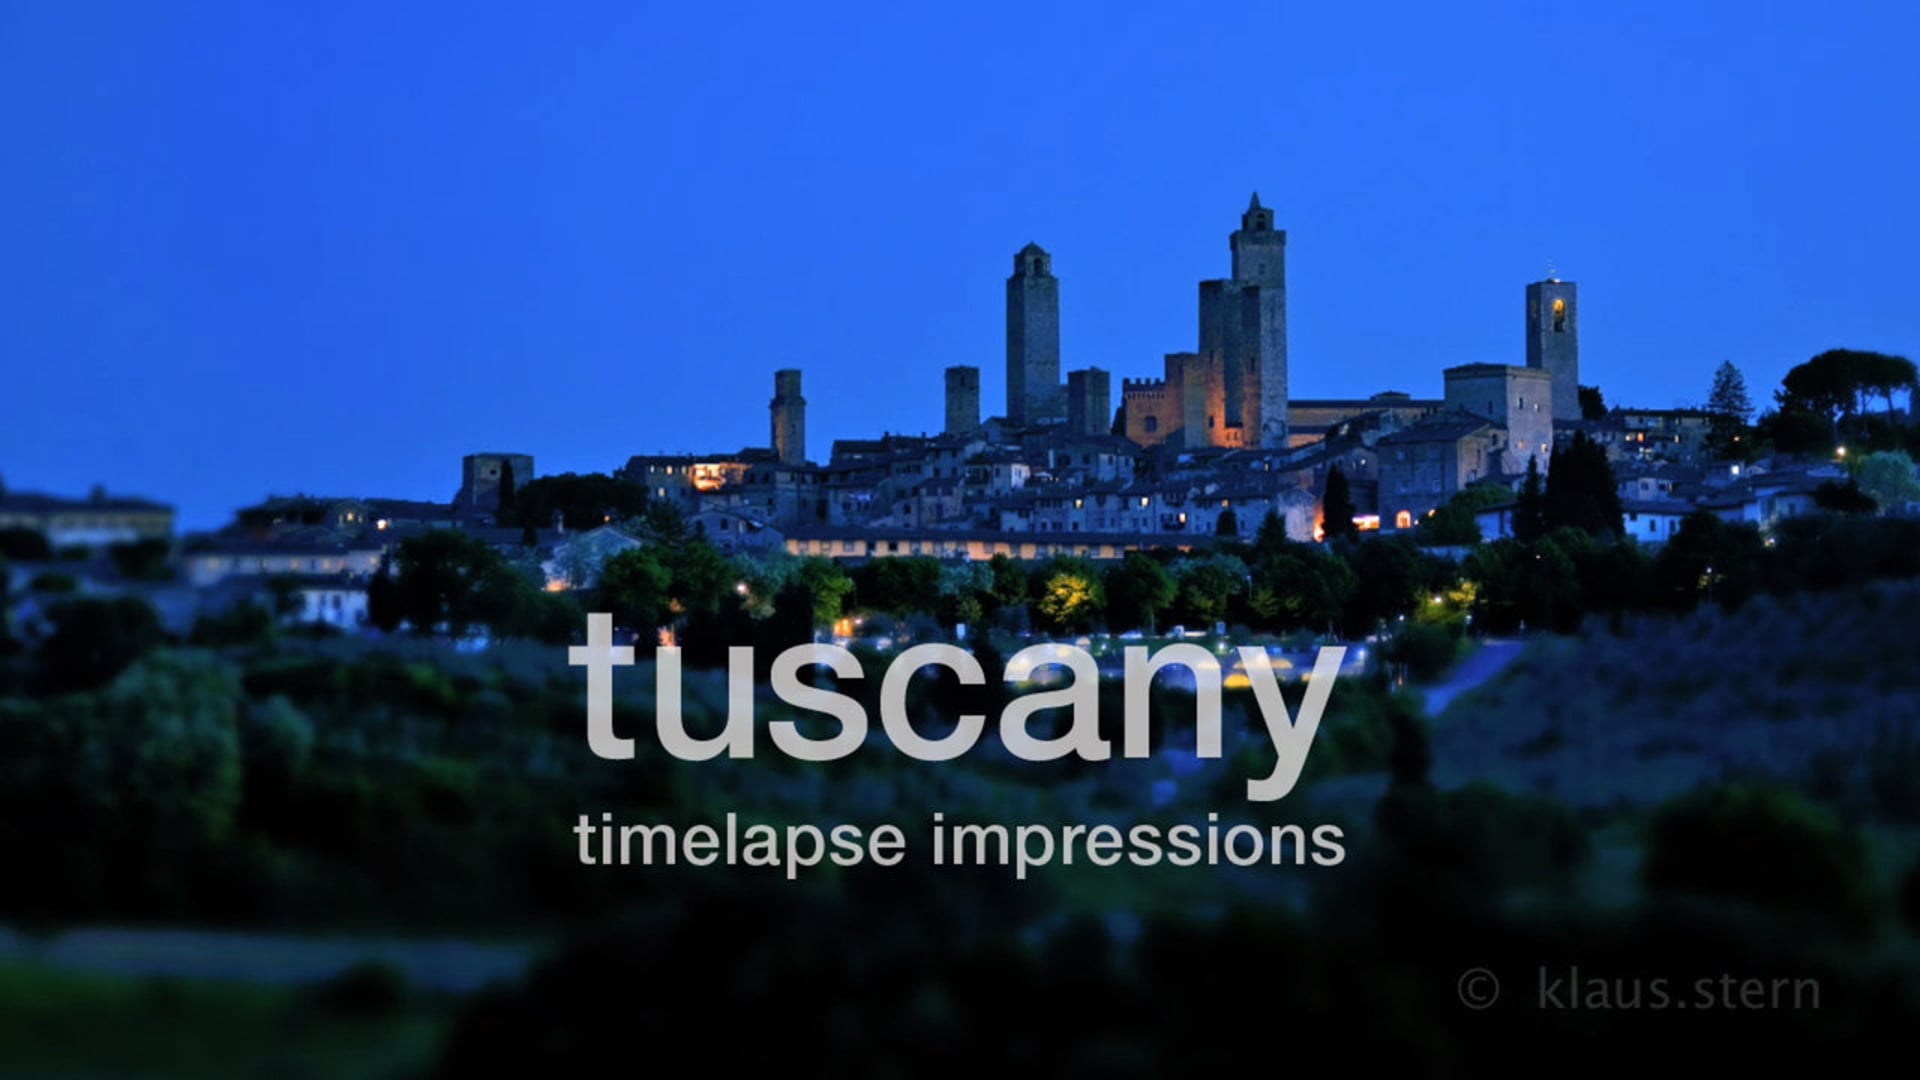 Tuscany - Timelapse Impressions